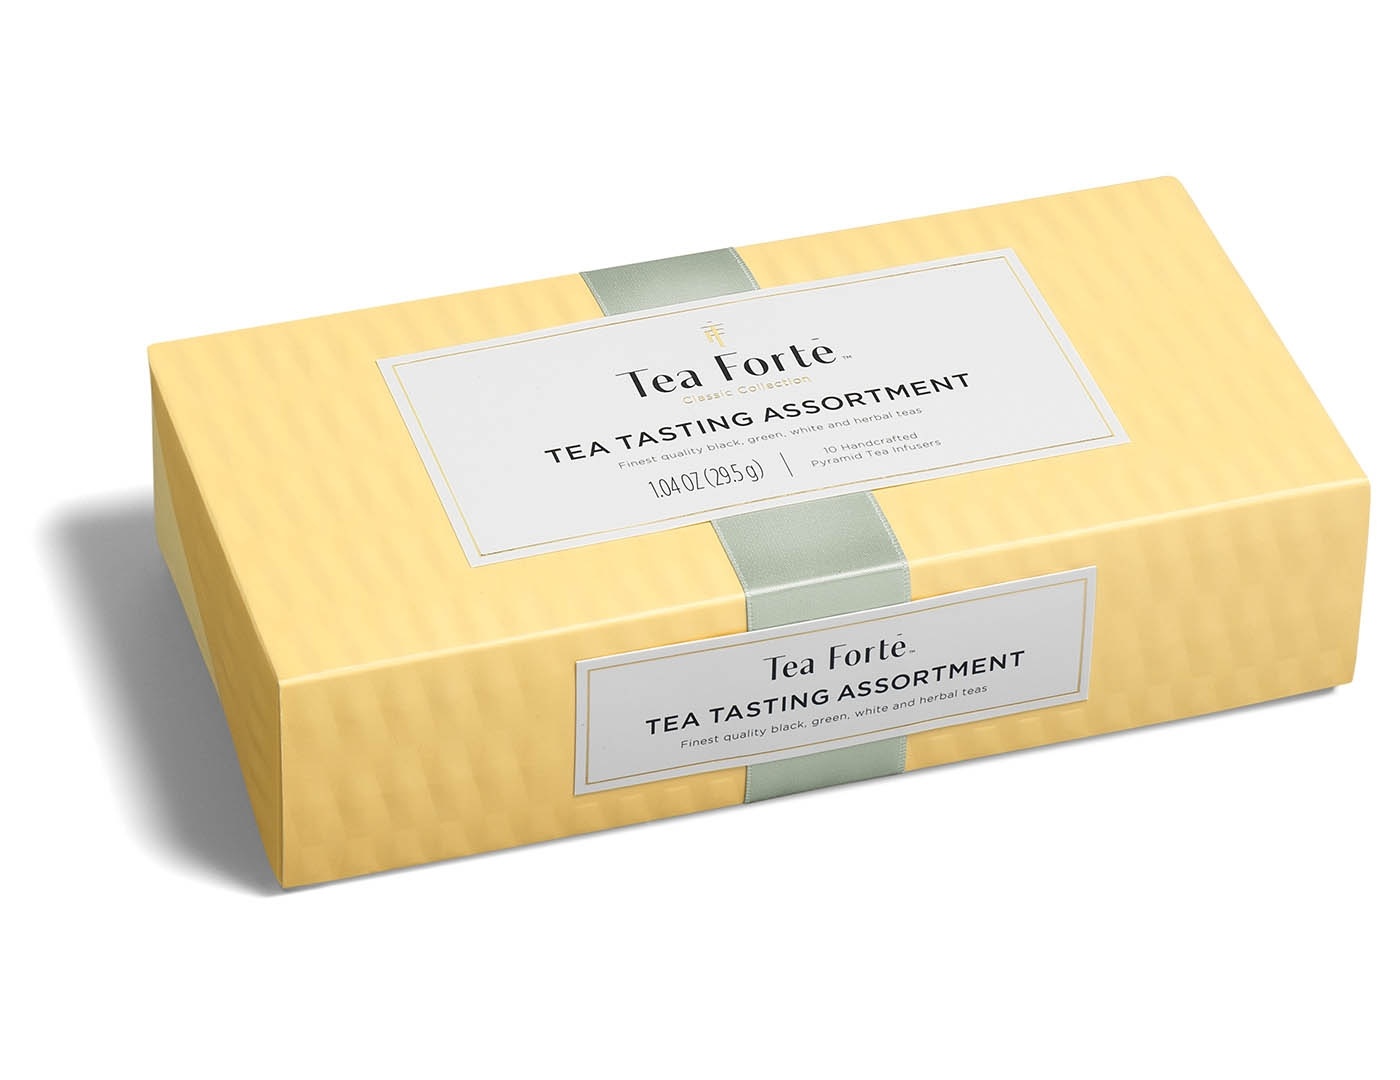 Tea forte Tea Tasting Assortment Petite Presentation Box